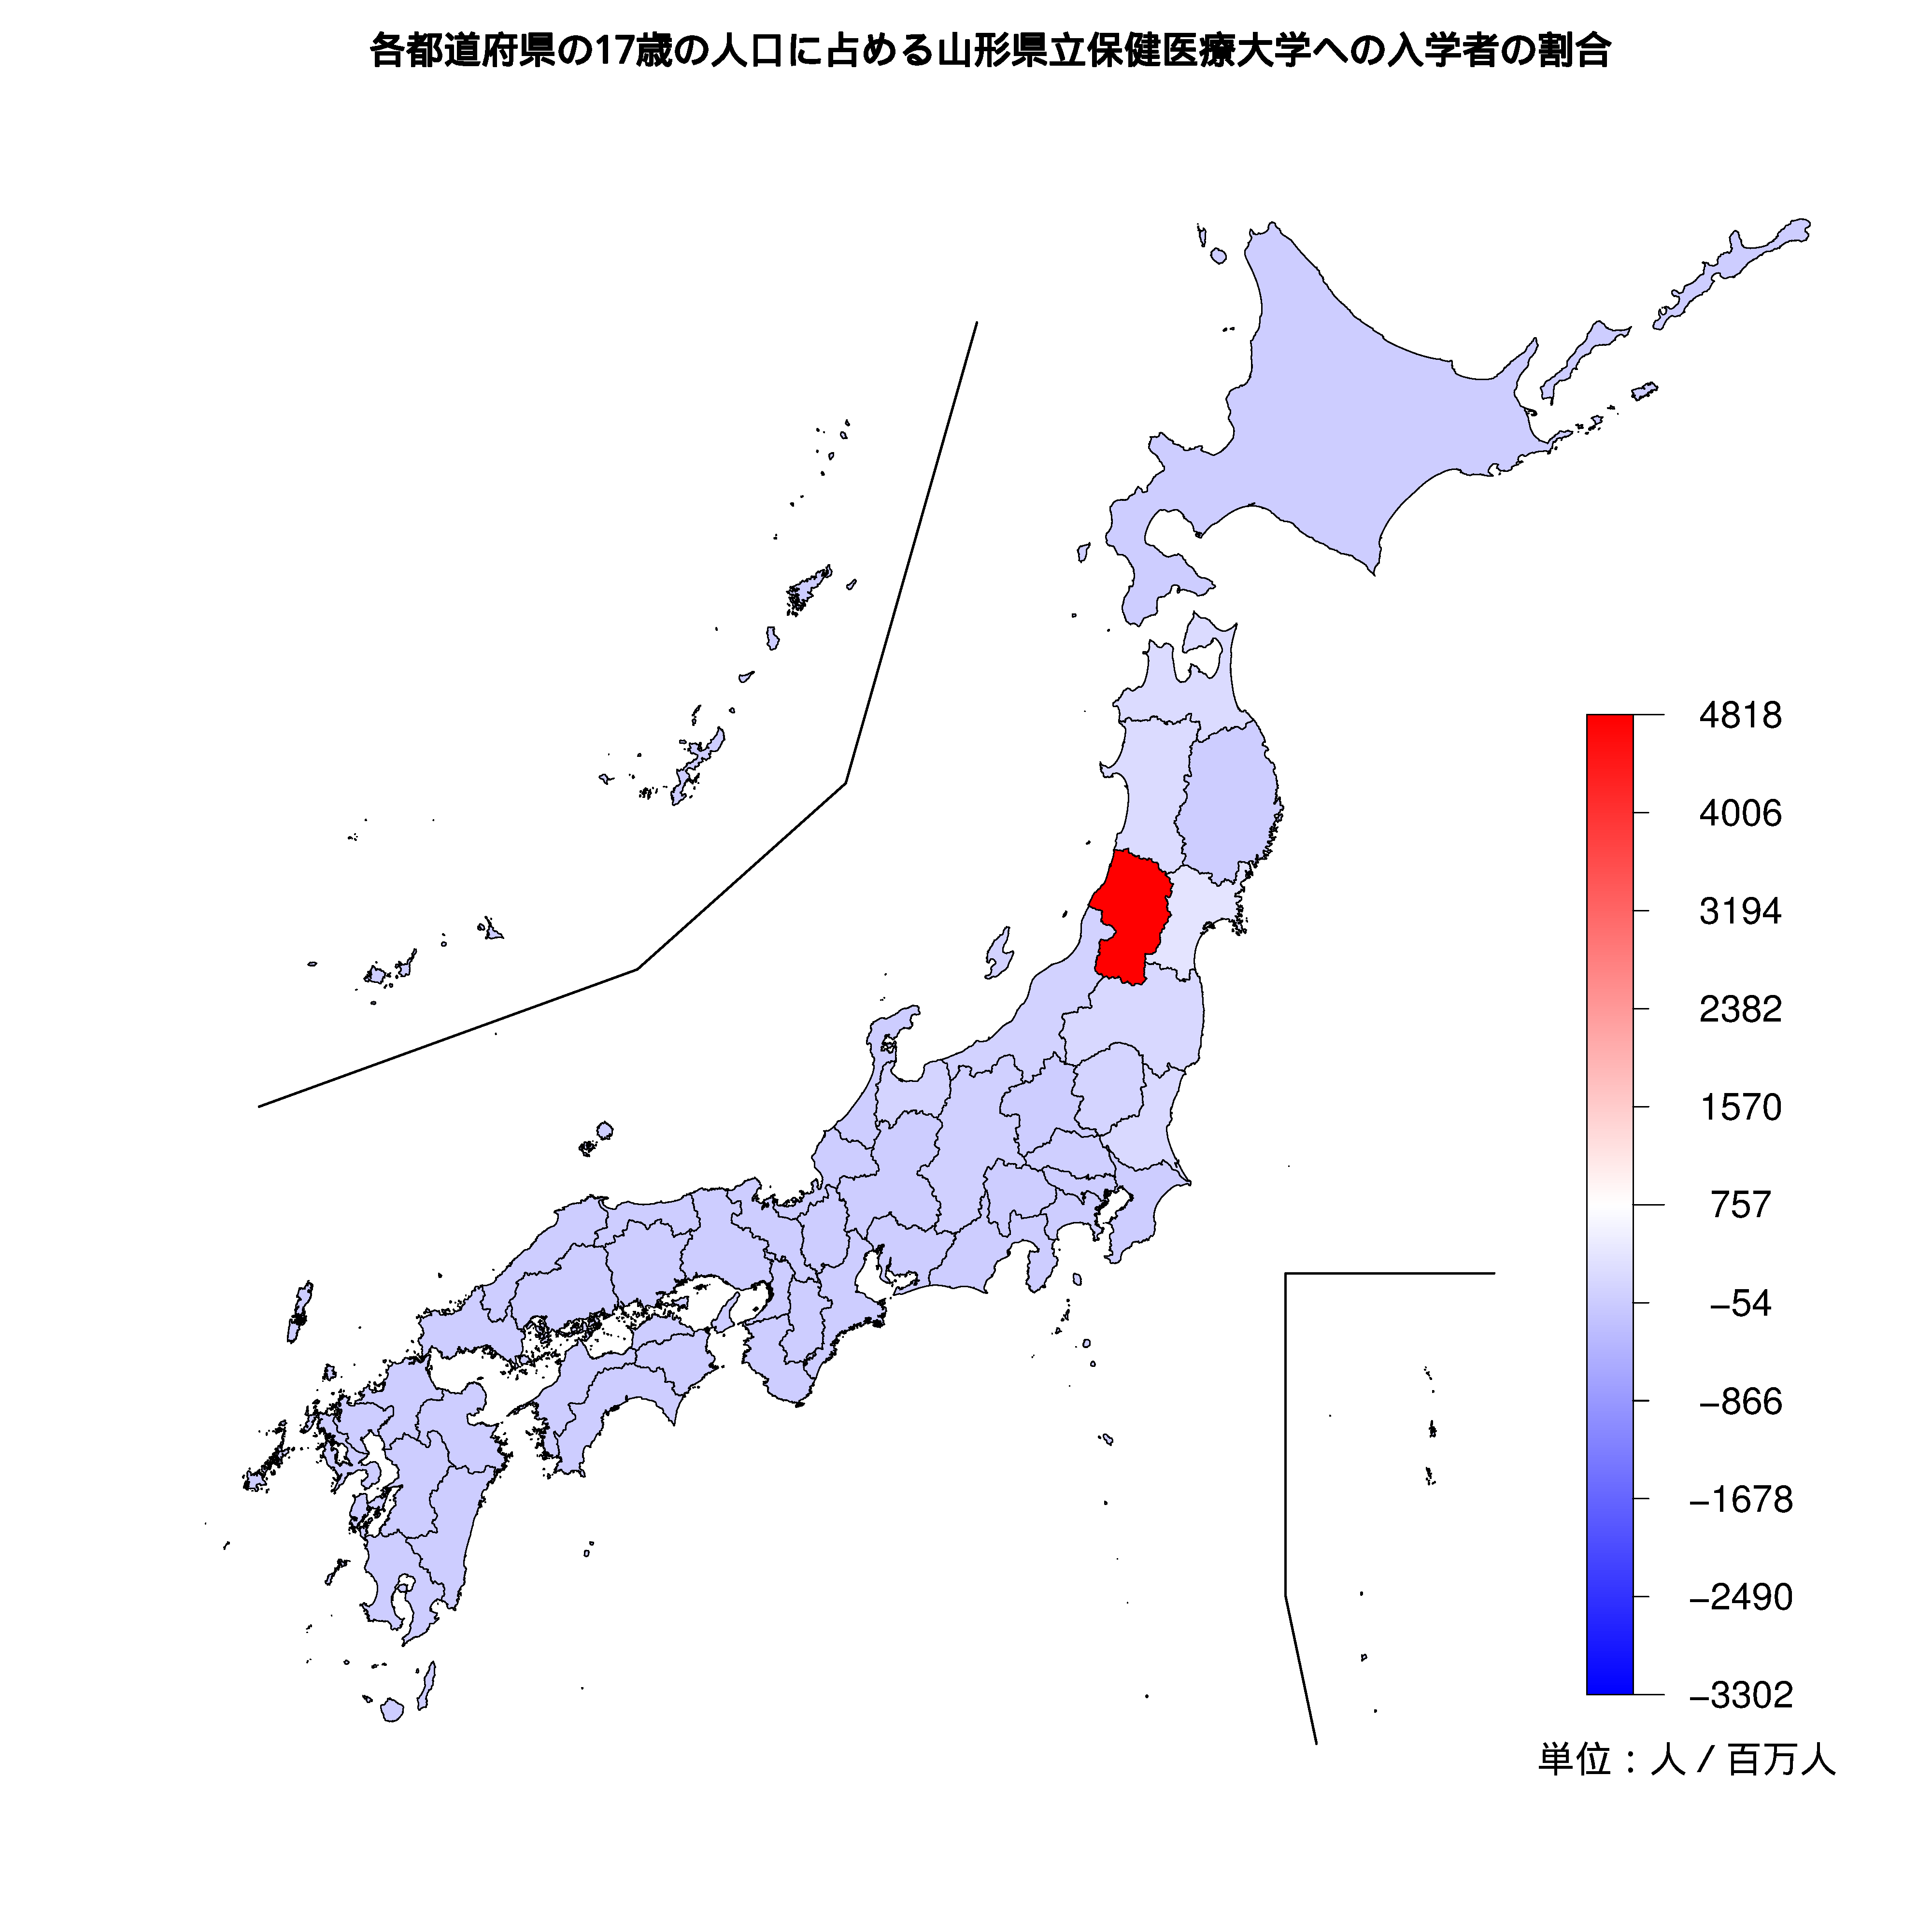 山形県立保健医療大学への入学者が多い都道府県の色分け地図